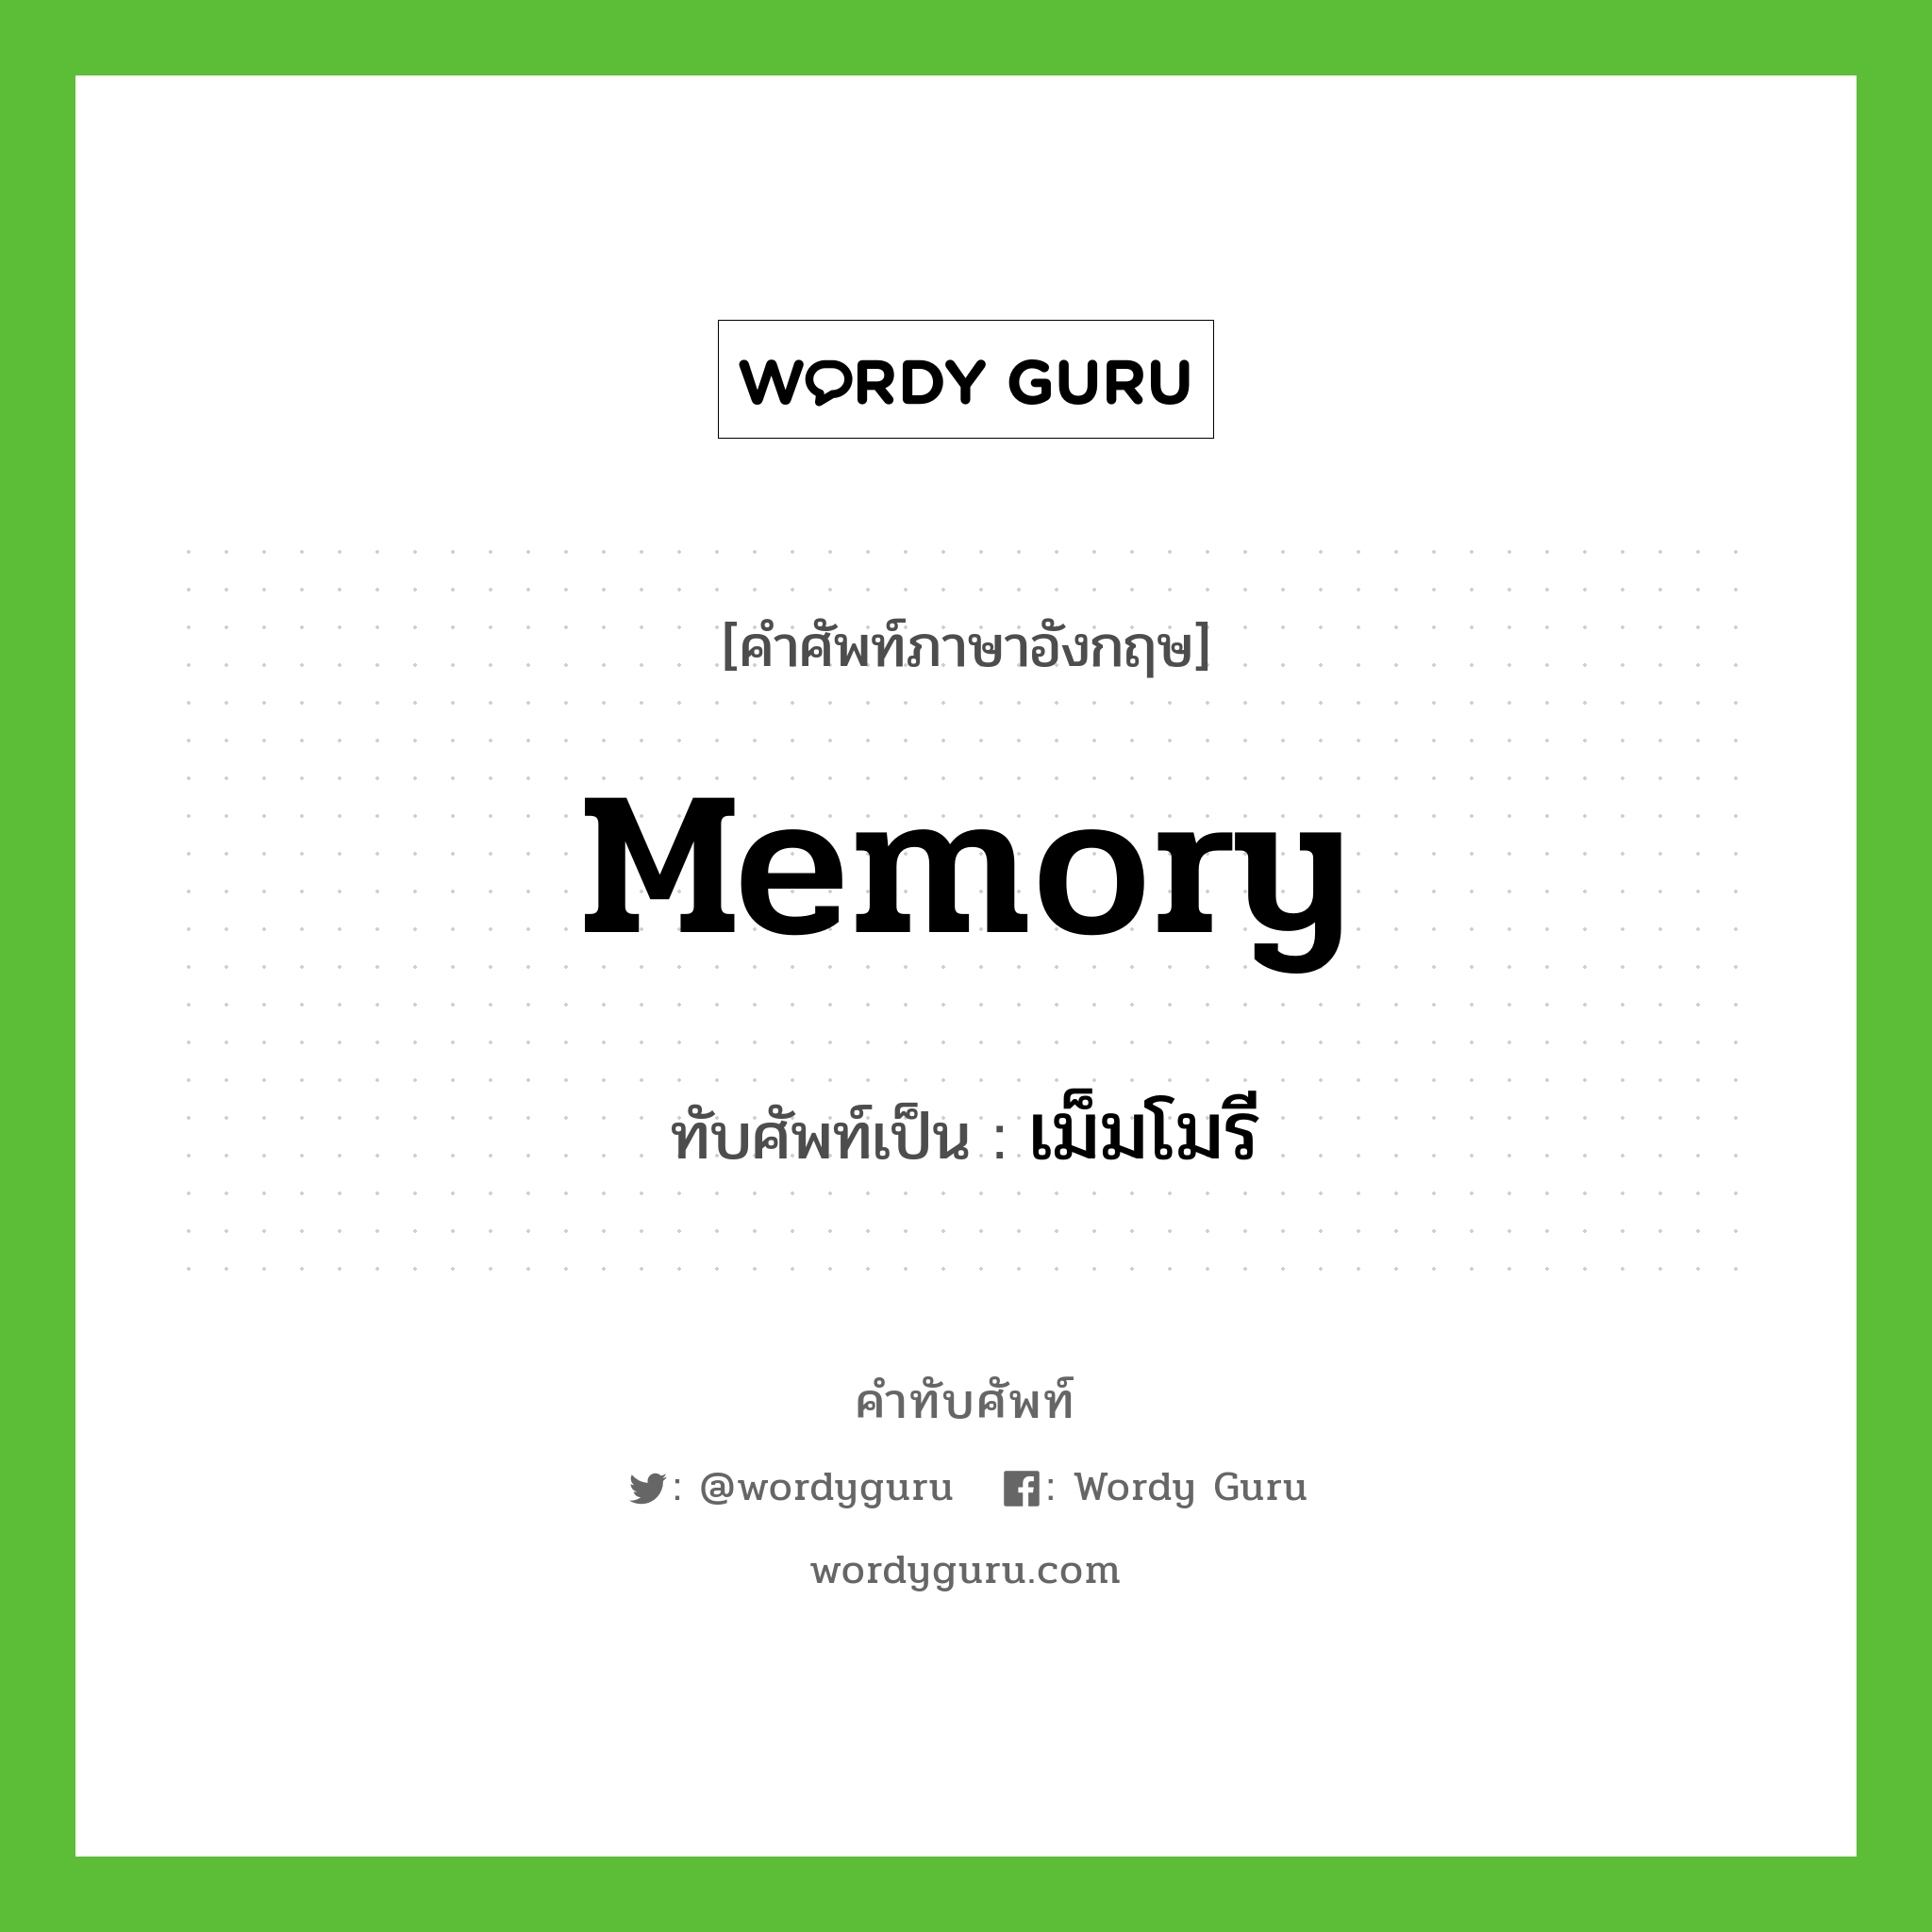 memory เขียนเป็นคำไทยว่าอะไร?, คำศัพท์ภาษาอังกฤษ memory ทับศัพท์เป็น เม็มโมรี